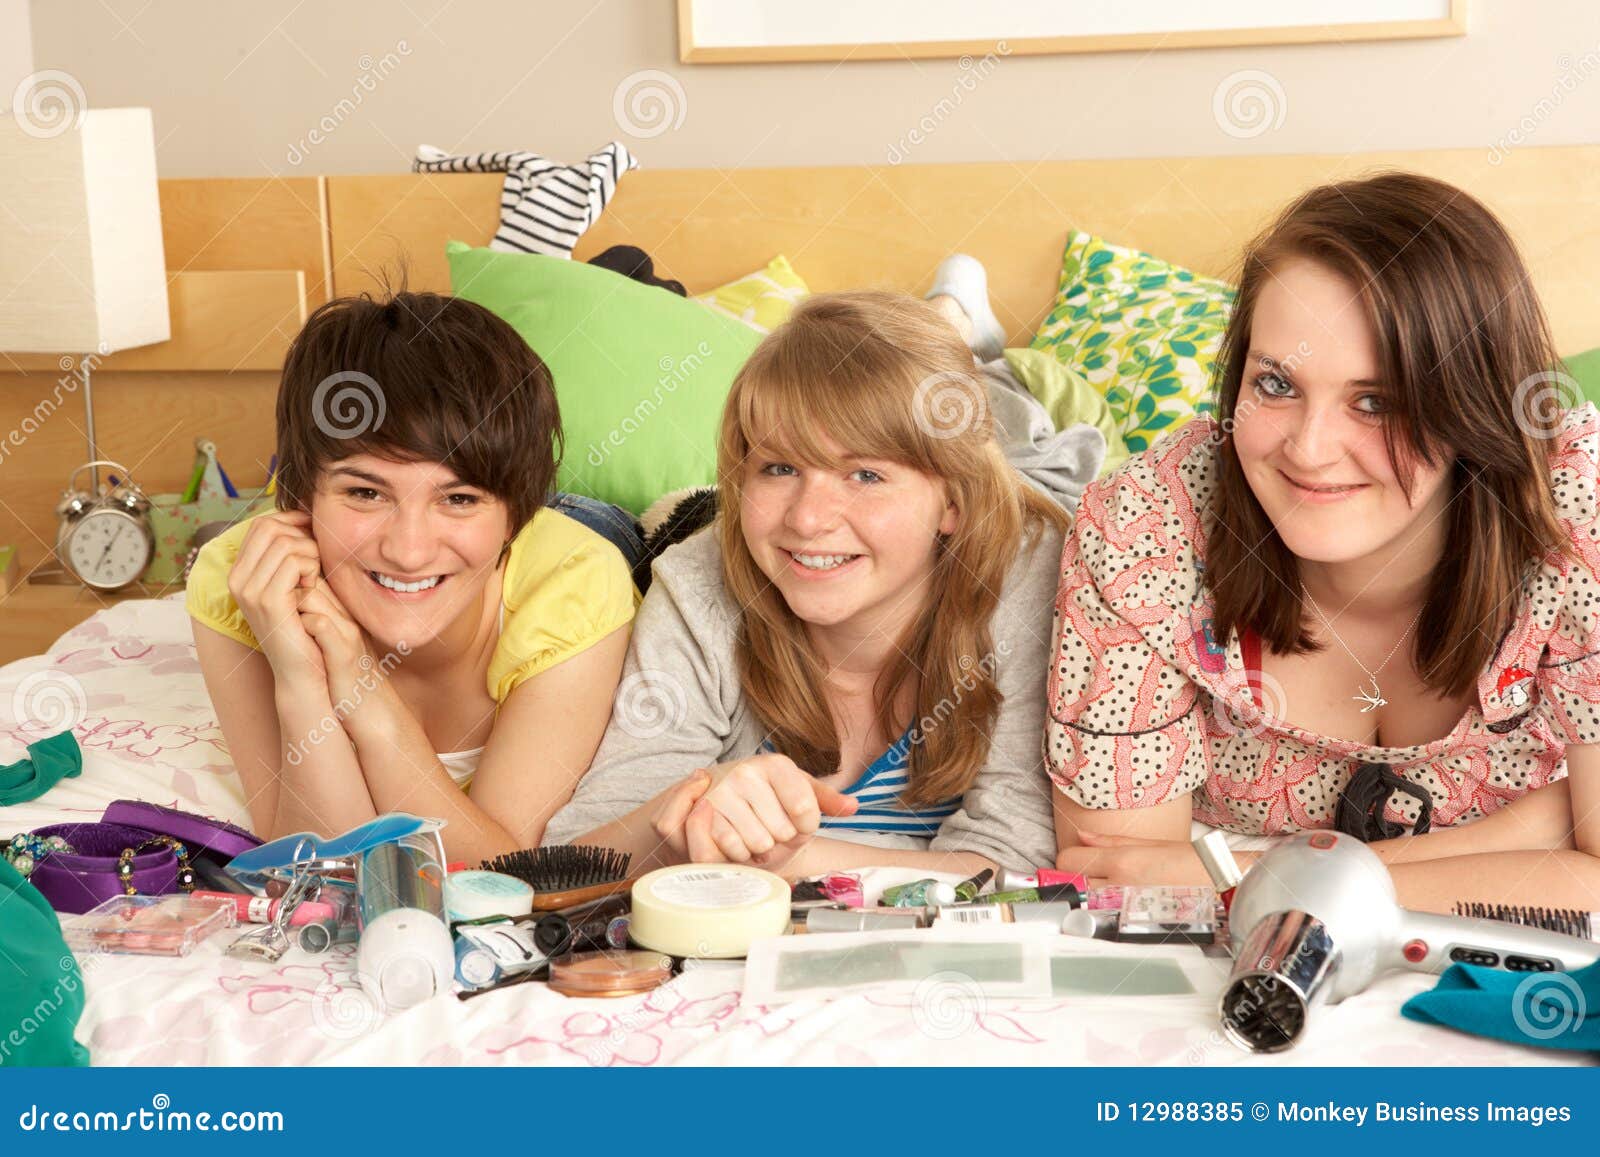 group of teenage girls in untidy bedroom